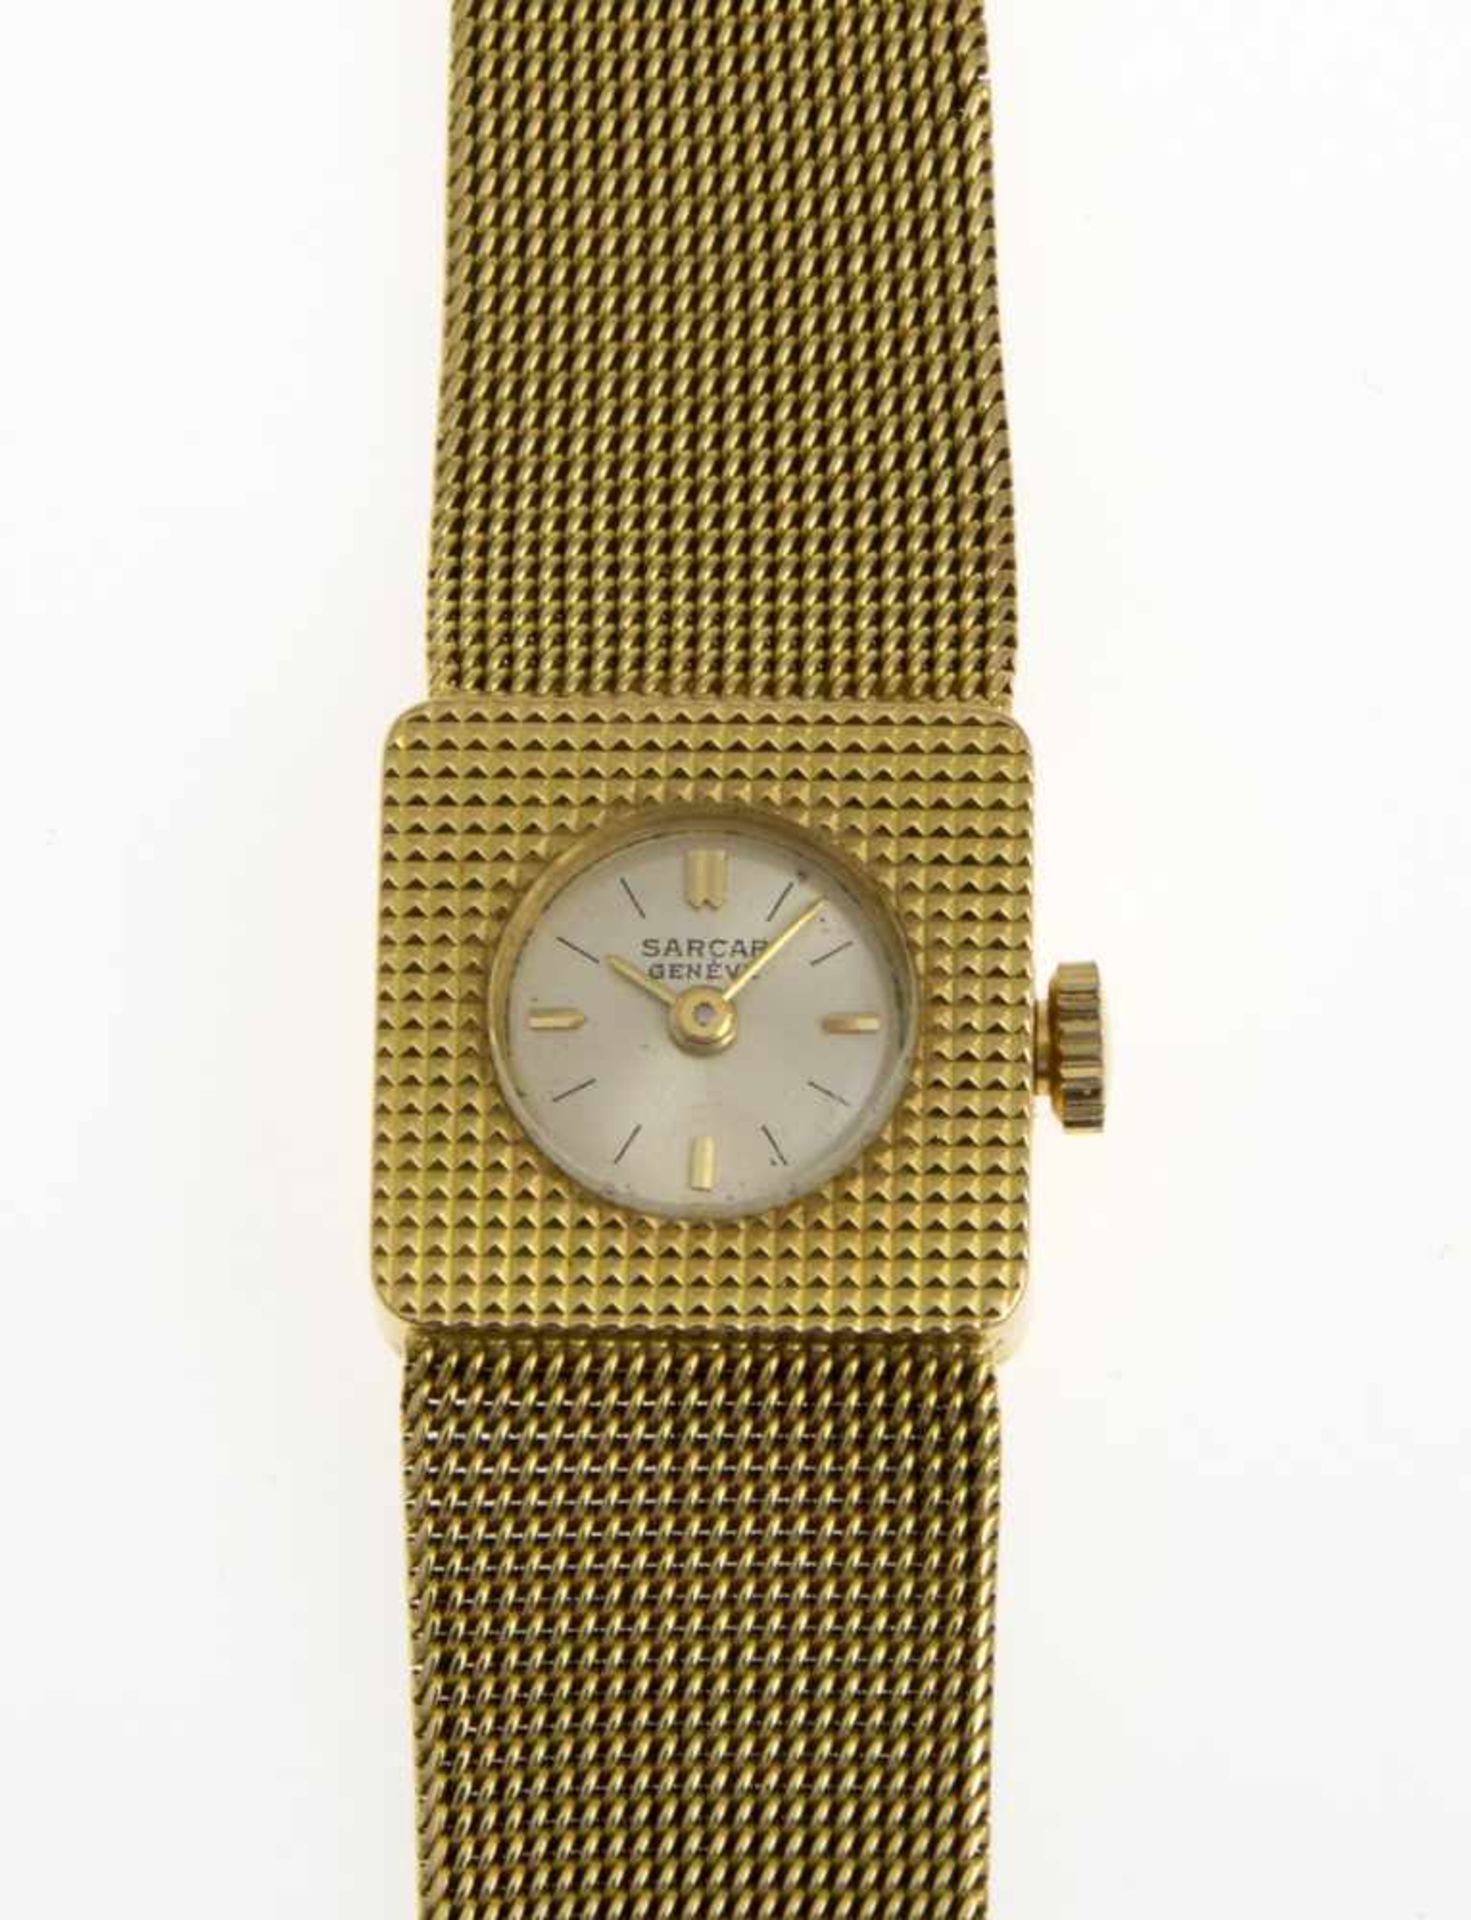 Sarcar-DamenarmbanduhrGehäuse und Armband aus Gelbgold 750. Versilbertes Zifferblatt mit - Bild 3 aus 3